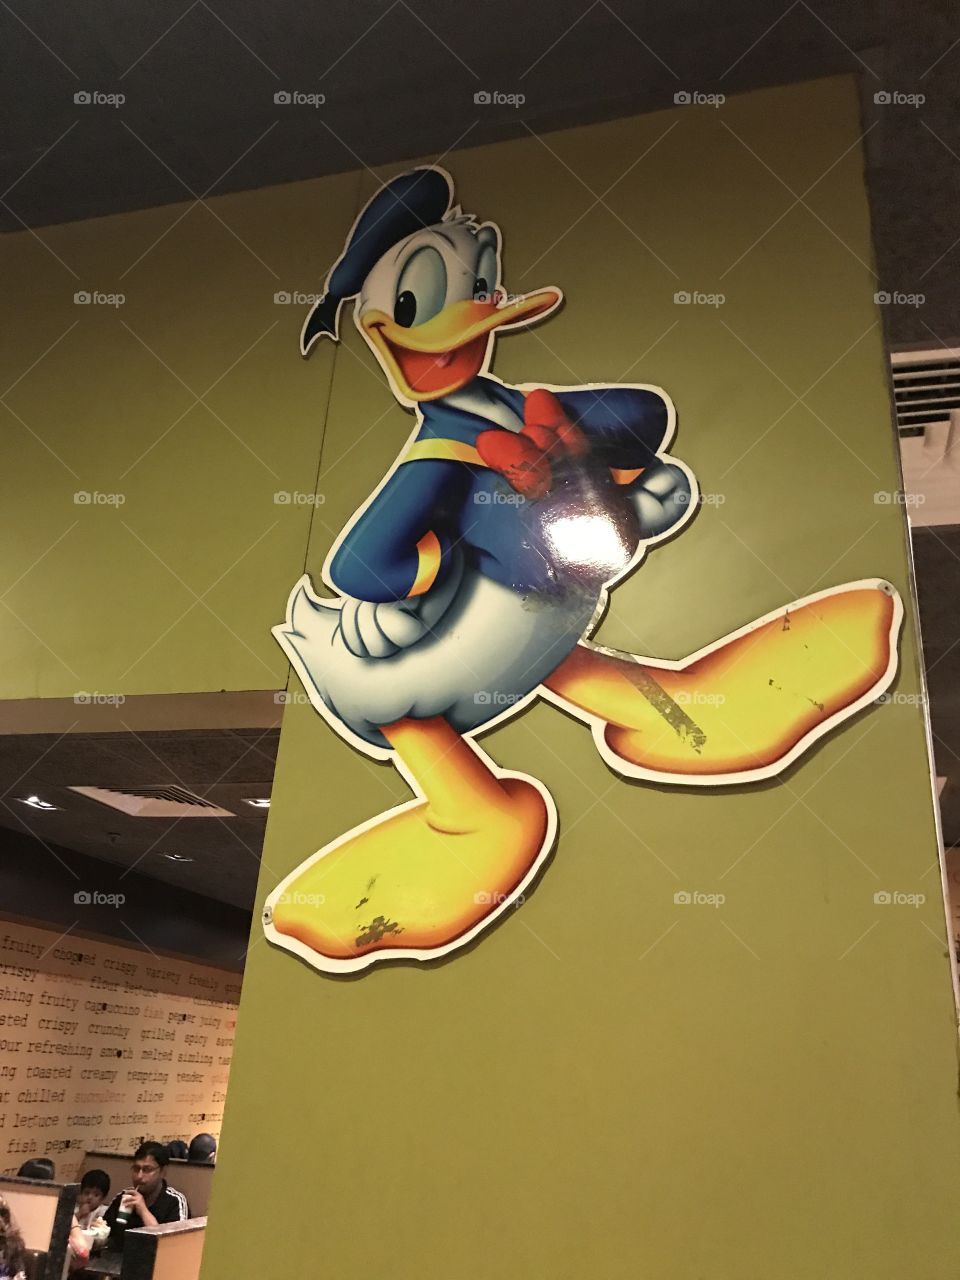 Donald at McDonald 